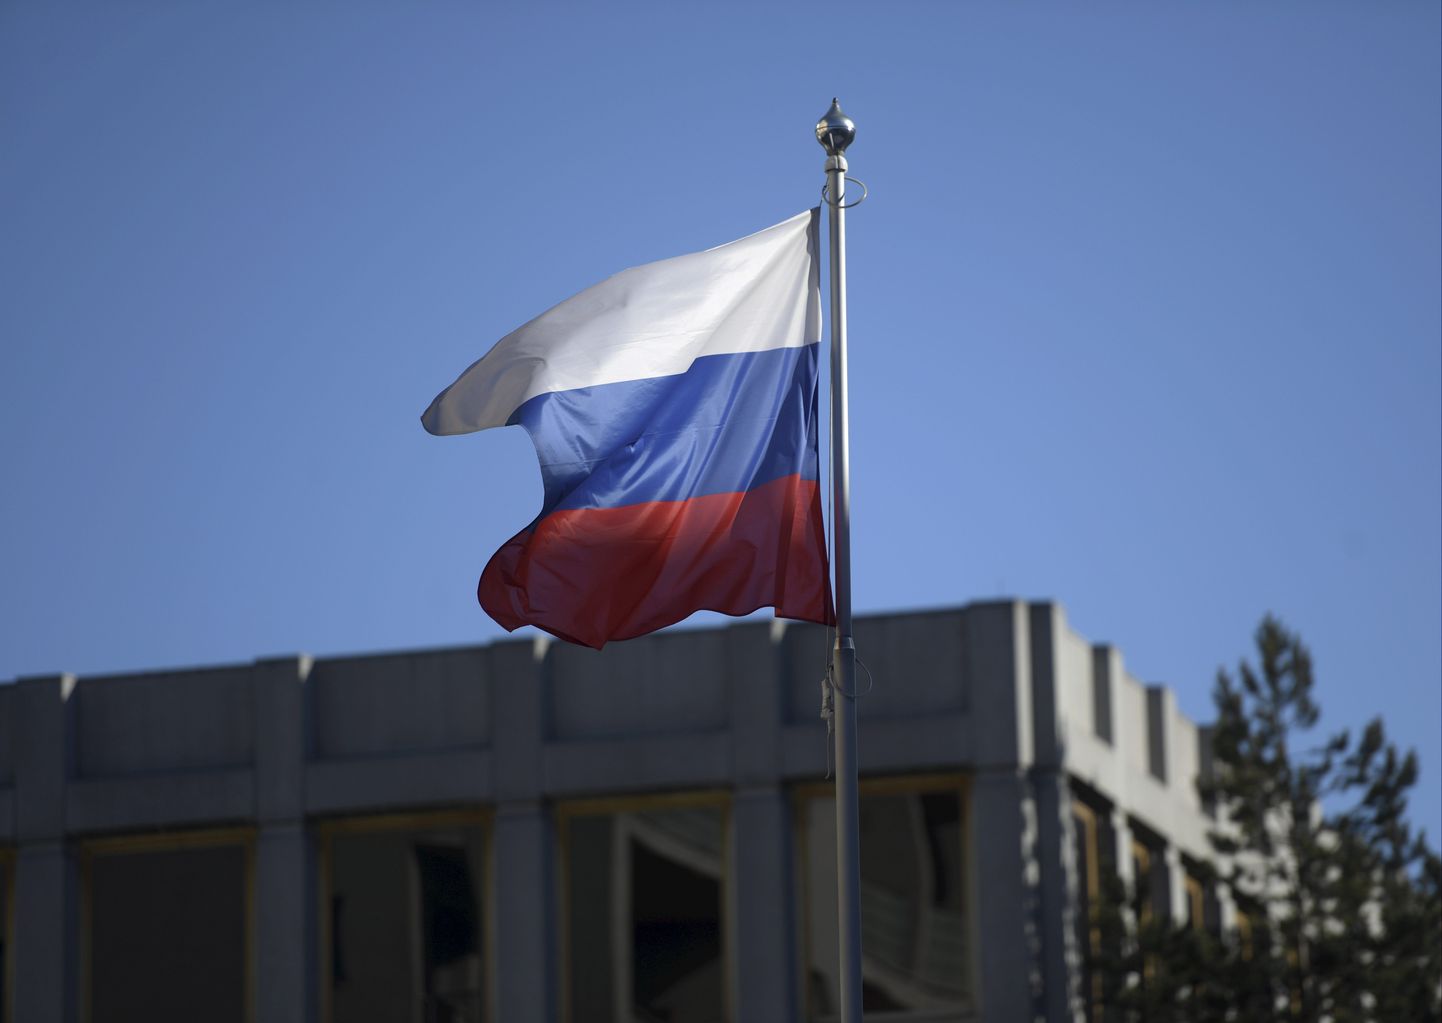 Vene lipp saatkonnahoone kohal.